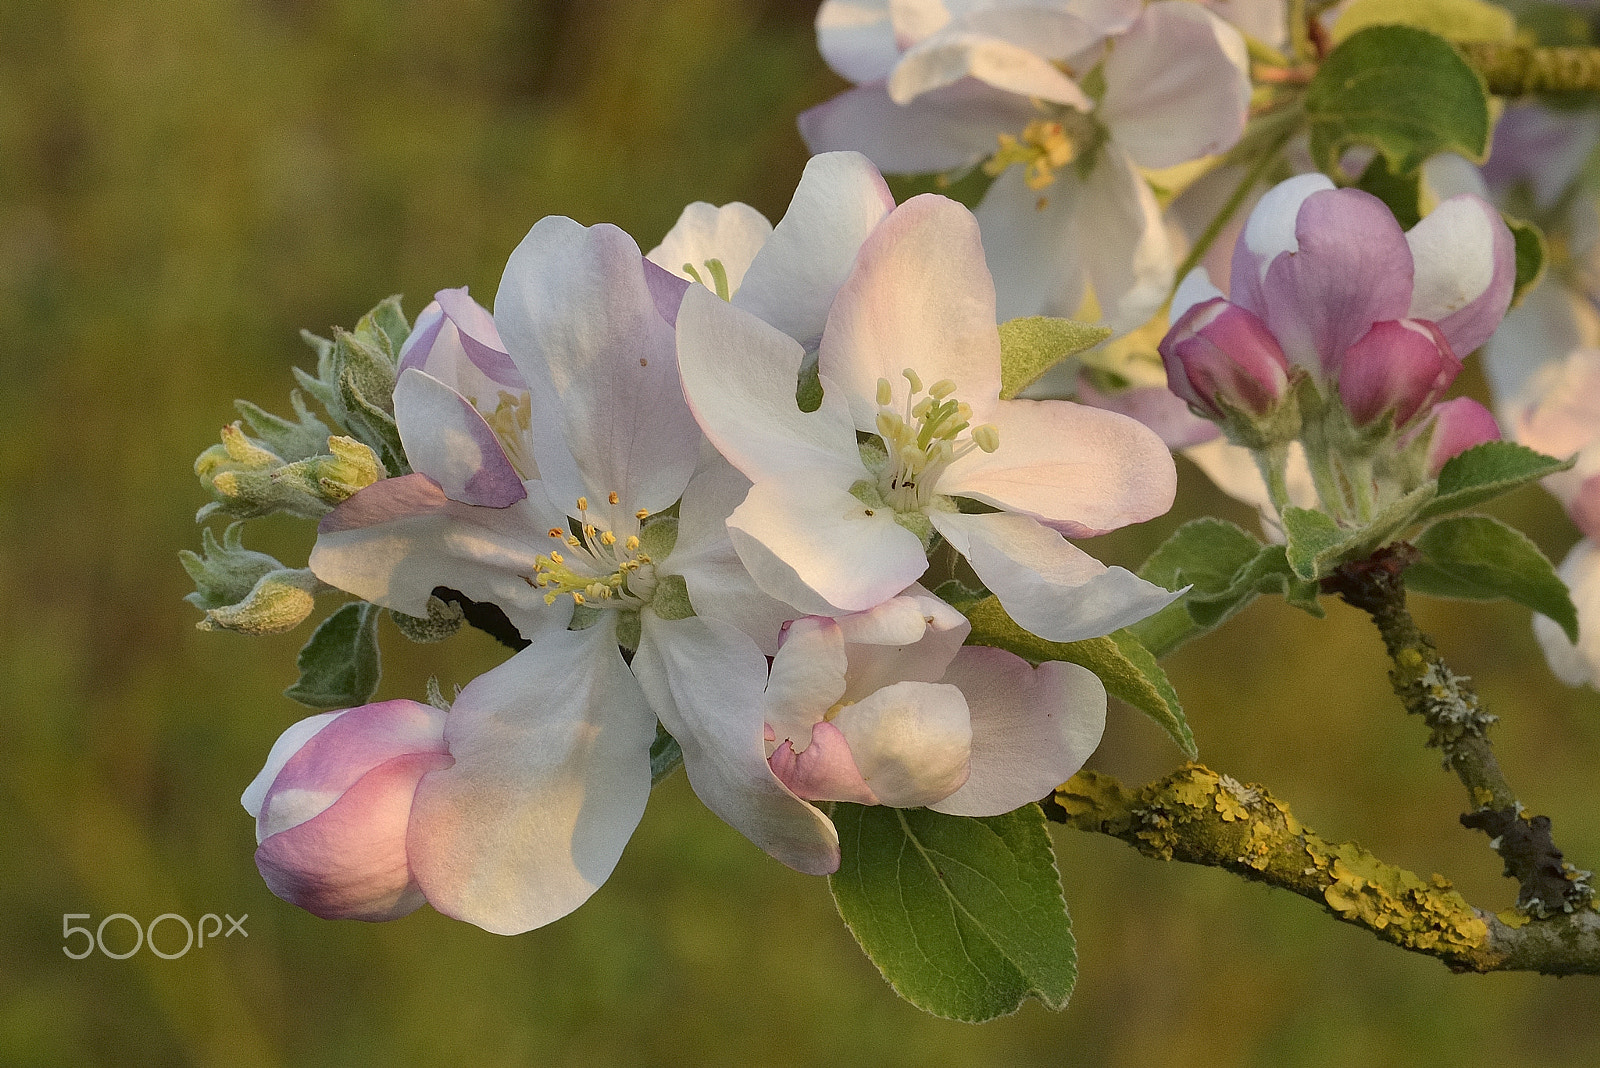 Zeiss Milvus 85mm f/1.4 sample photo. Apple blossoms / pommiers en fleurs photography